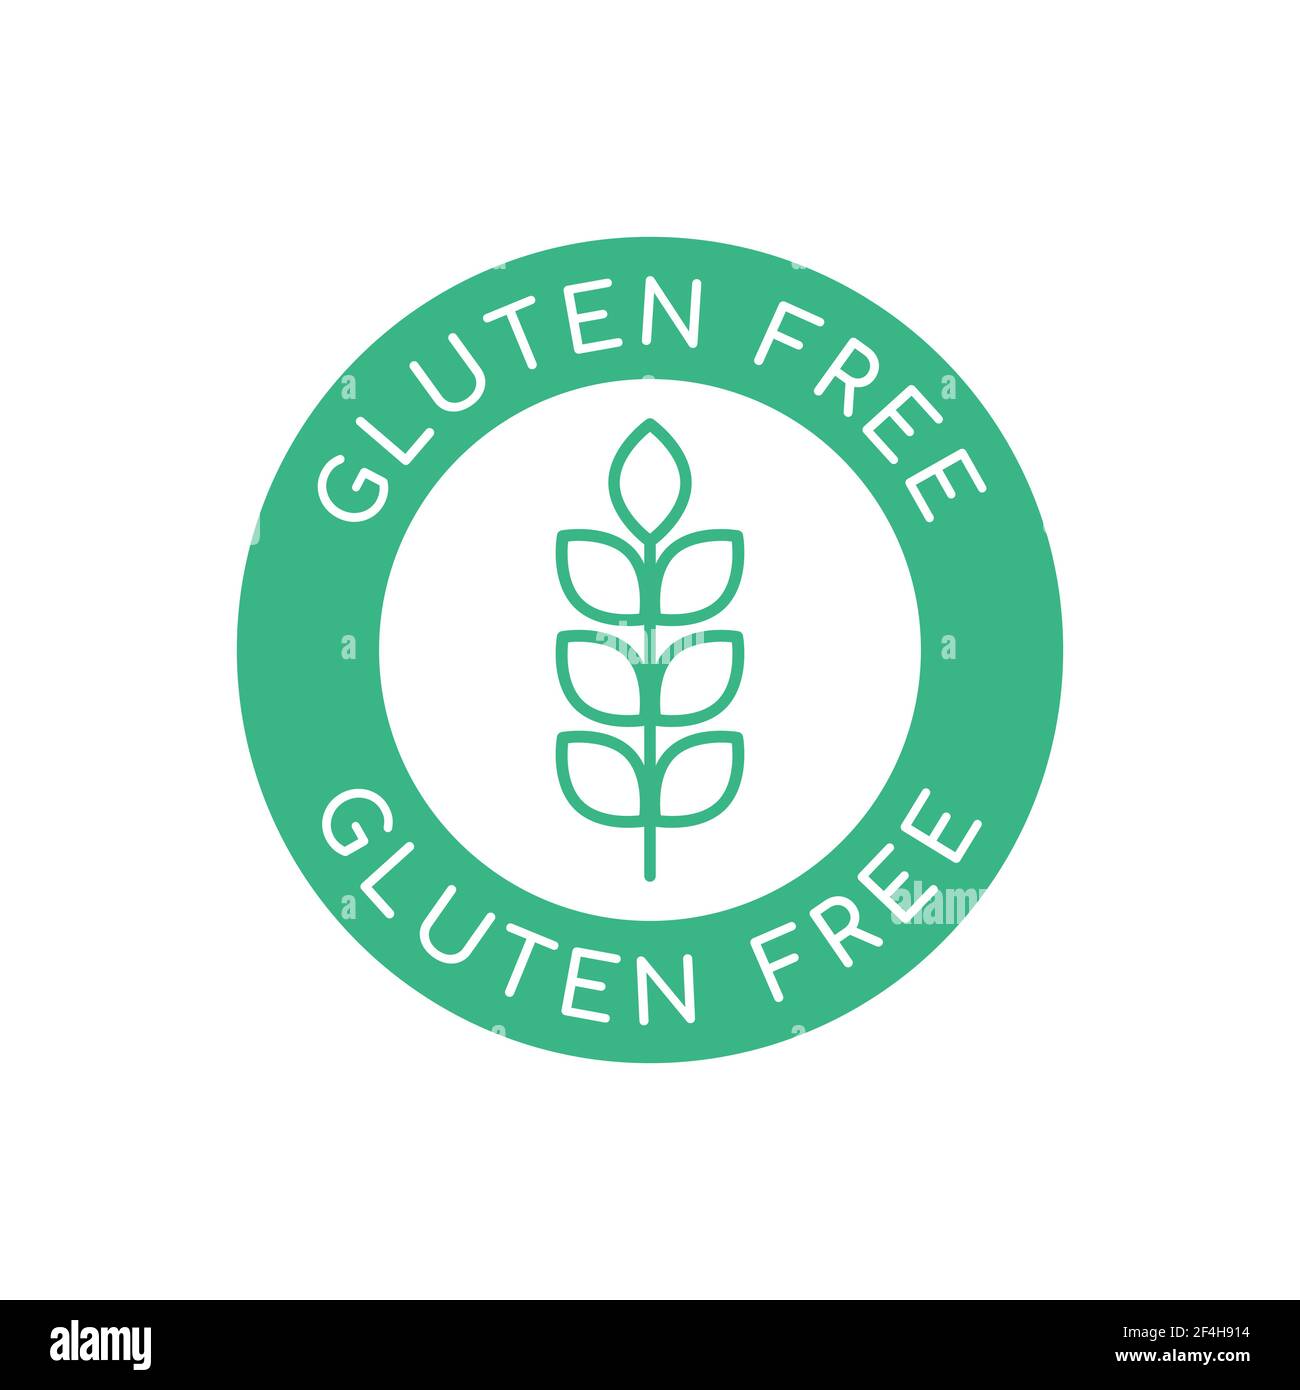 Glutenfrei Symbol, Zeichen, Logo. Weizensymbol in einem grünen Kreis. Grünes rundes Abzeichen mit Text Glutenfrei. Siegel Garantie zur Vermeidung von Gluten in Lebensmitteln. Vektor Stock Vektor